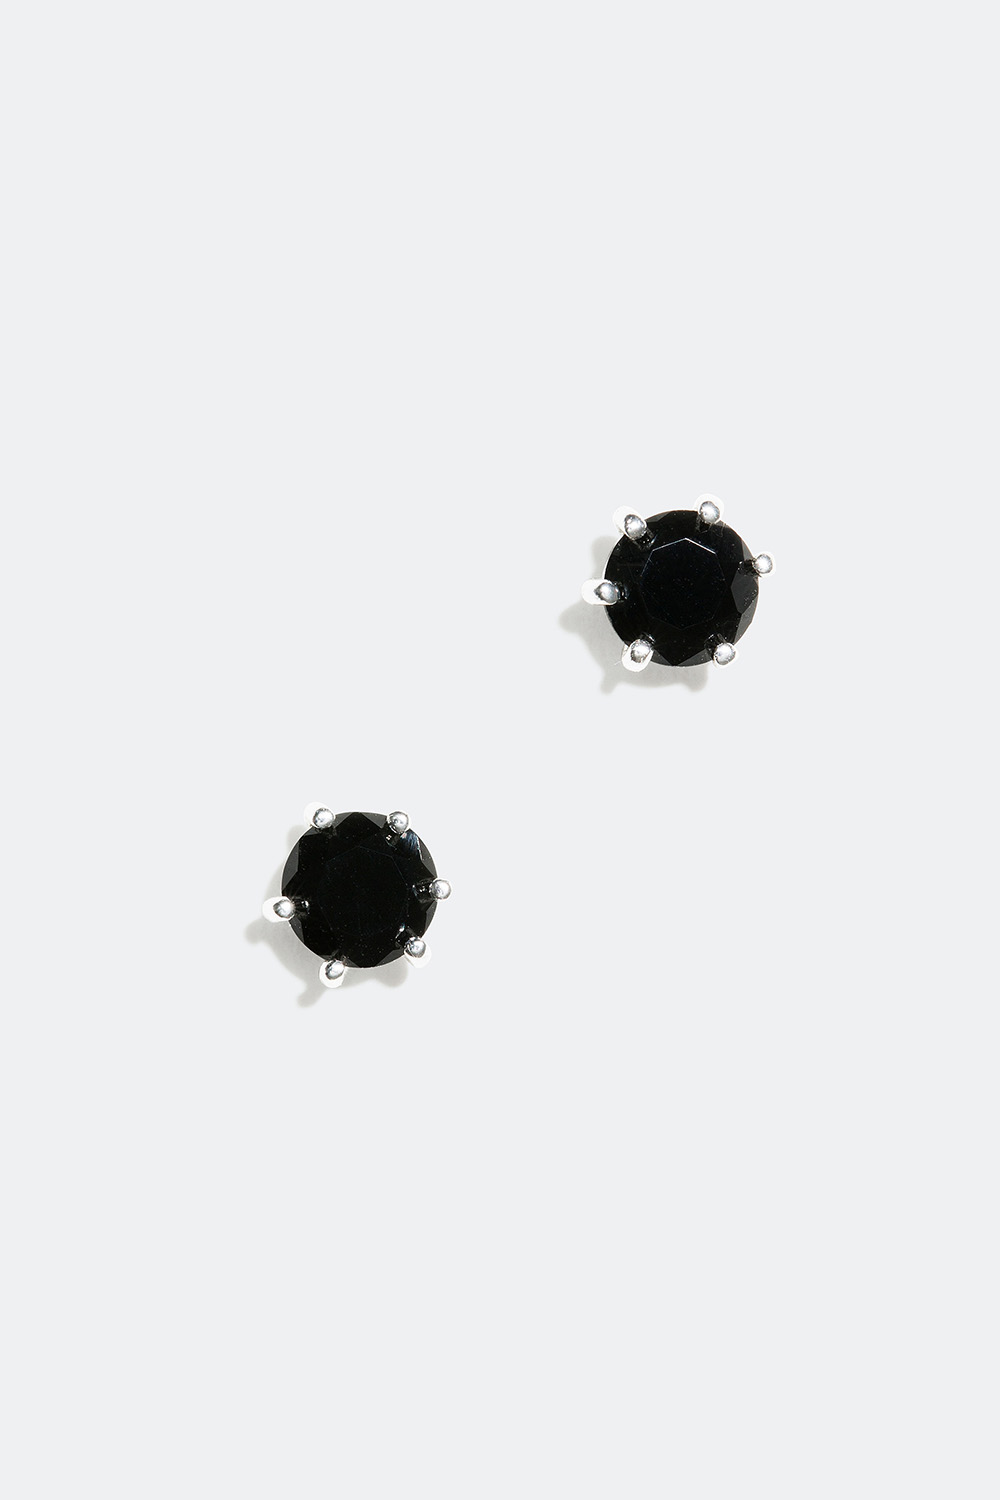 Små sorte ørestikker, ægte sølv, 0,5 cm i gruppen Ægte sølv / Sølvøreringe / Ørestikker i ægte sølv hos Glitter (325362200000)